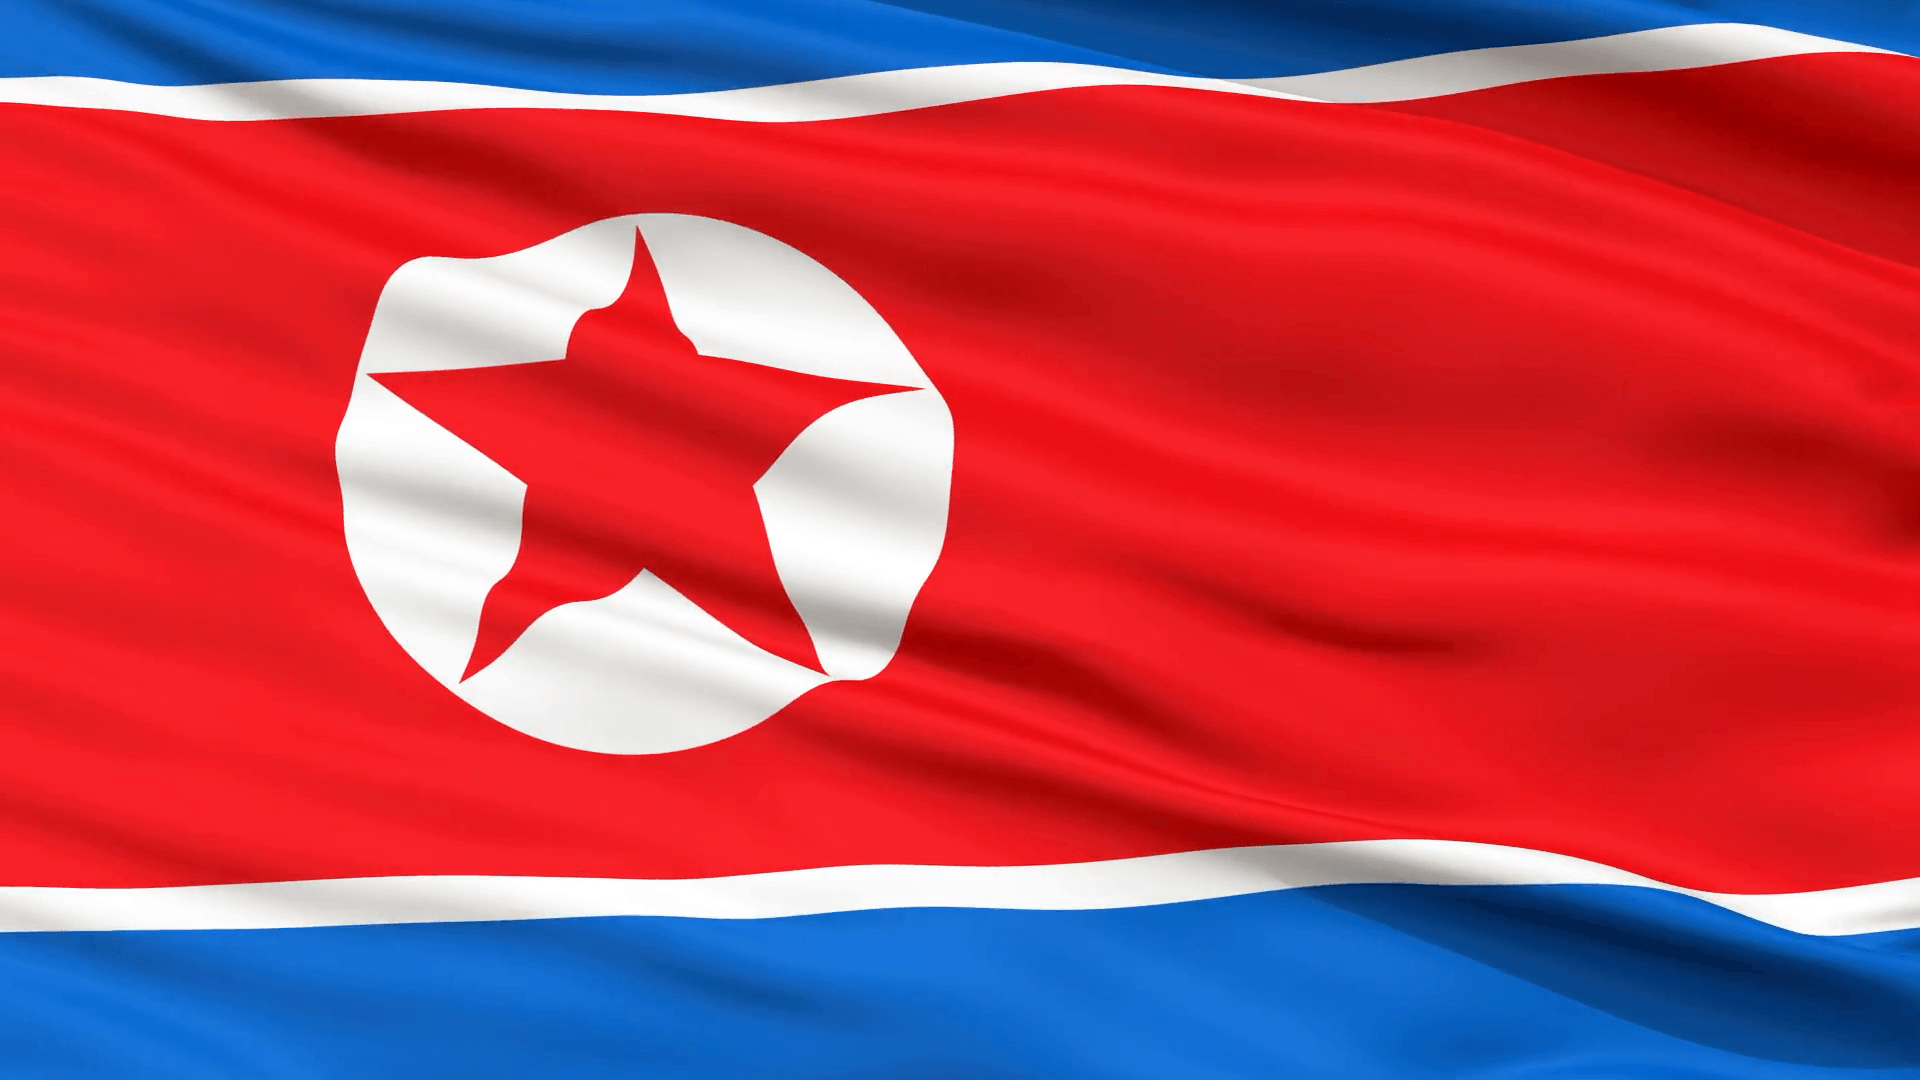 North Korea Flag Wallpapers - Wallpaper Cave